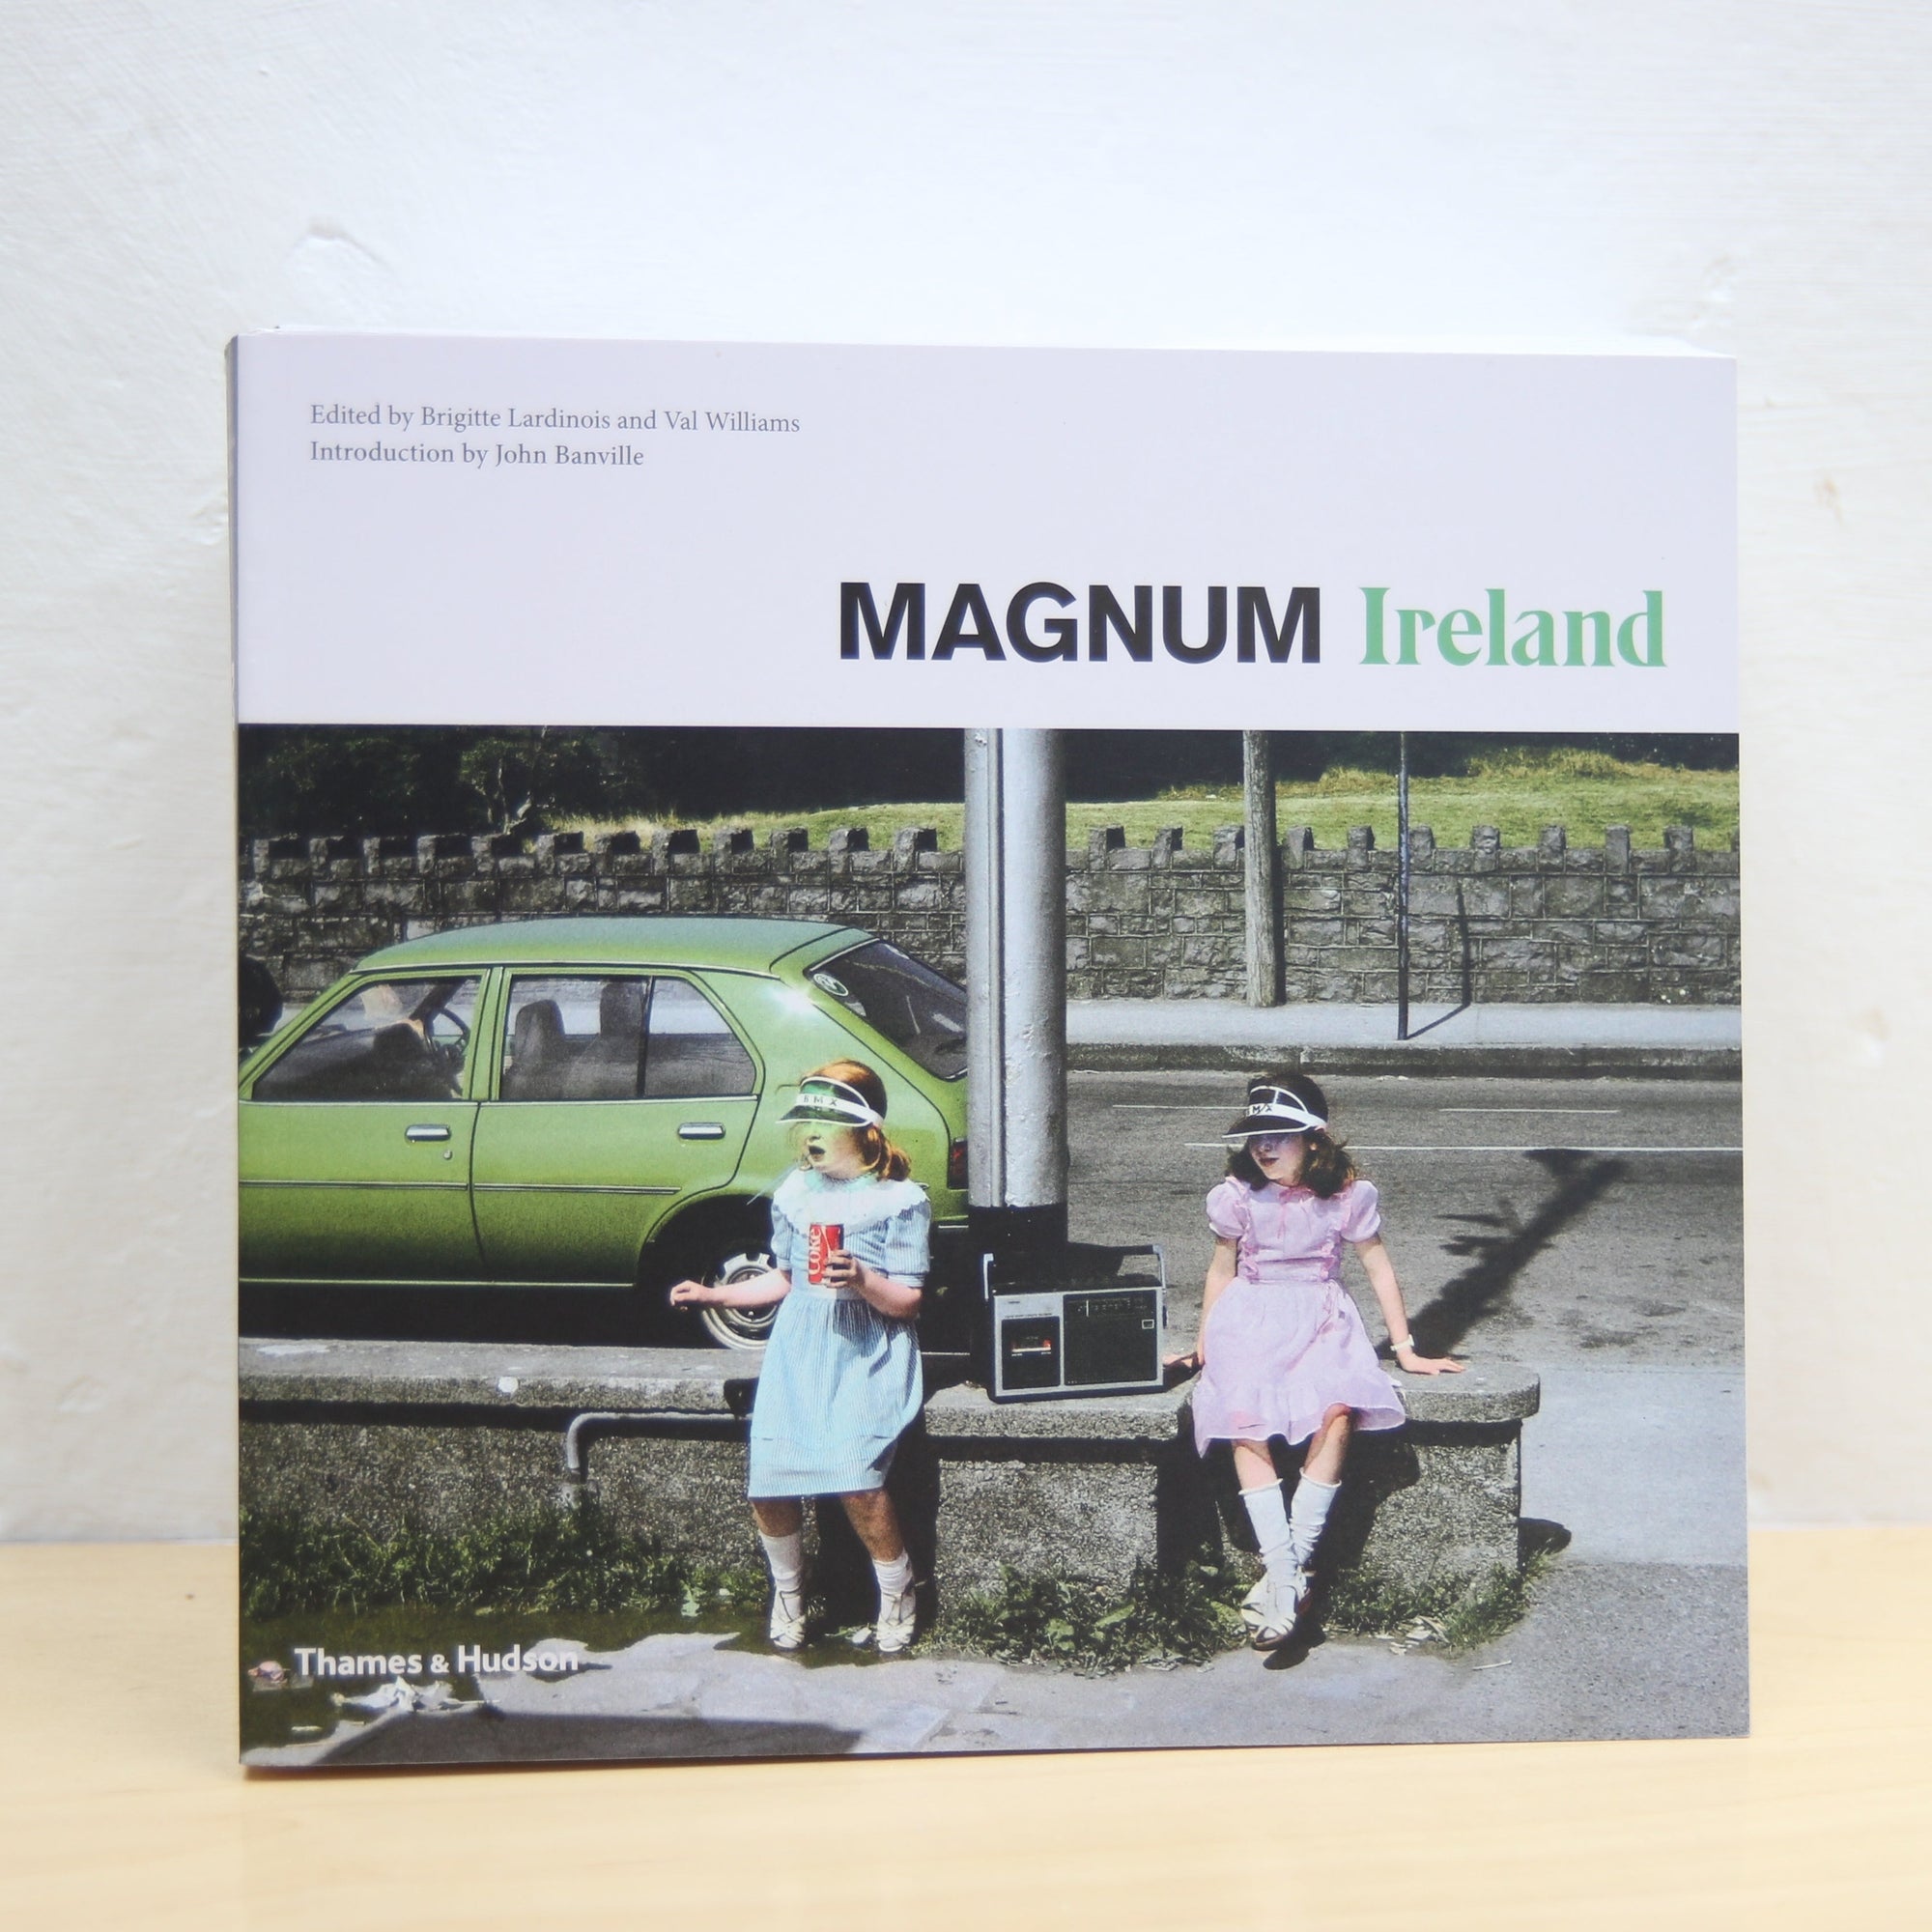 Magnum Ireland